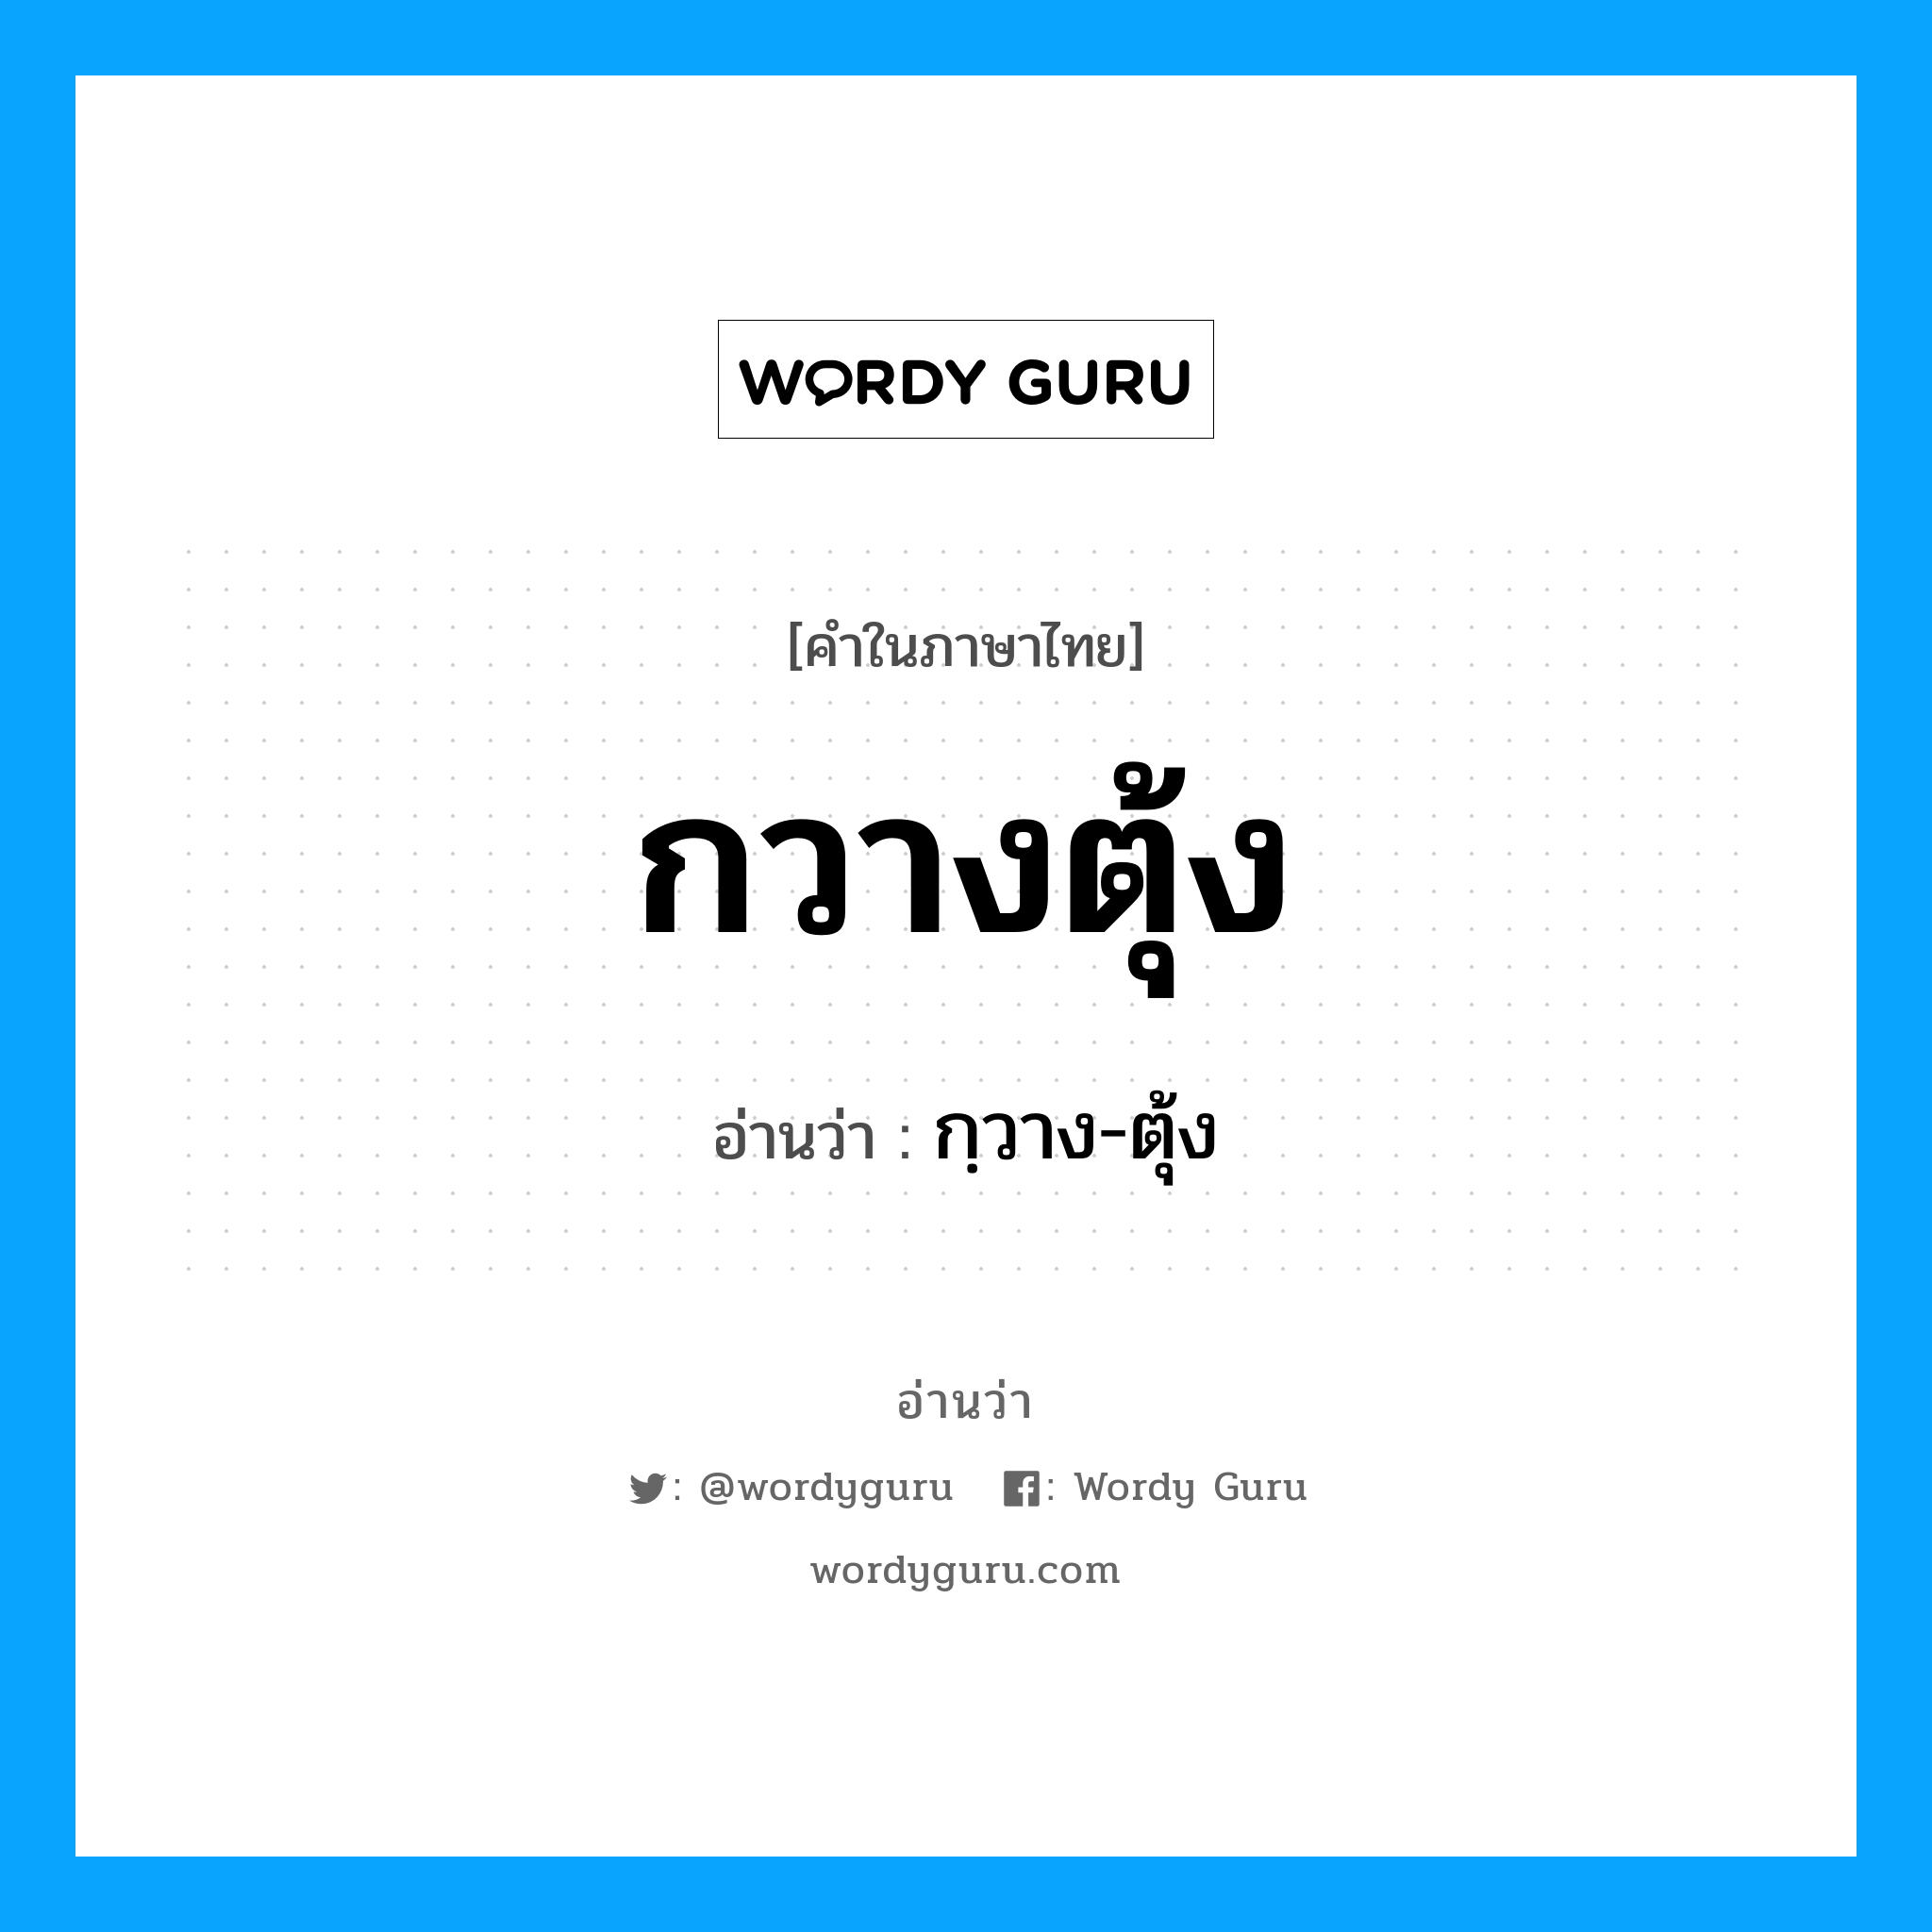 กฺวาง-ตุ้ง เป็นคำอ่านของคำไหน?, คำในภาษาไทย กฺวาง-ตุ้ง อ่านว่า กวางตุ้ง